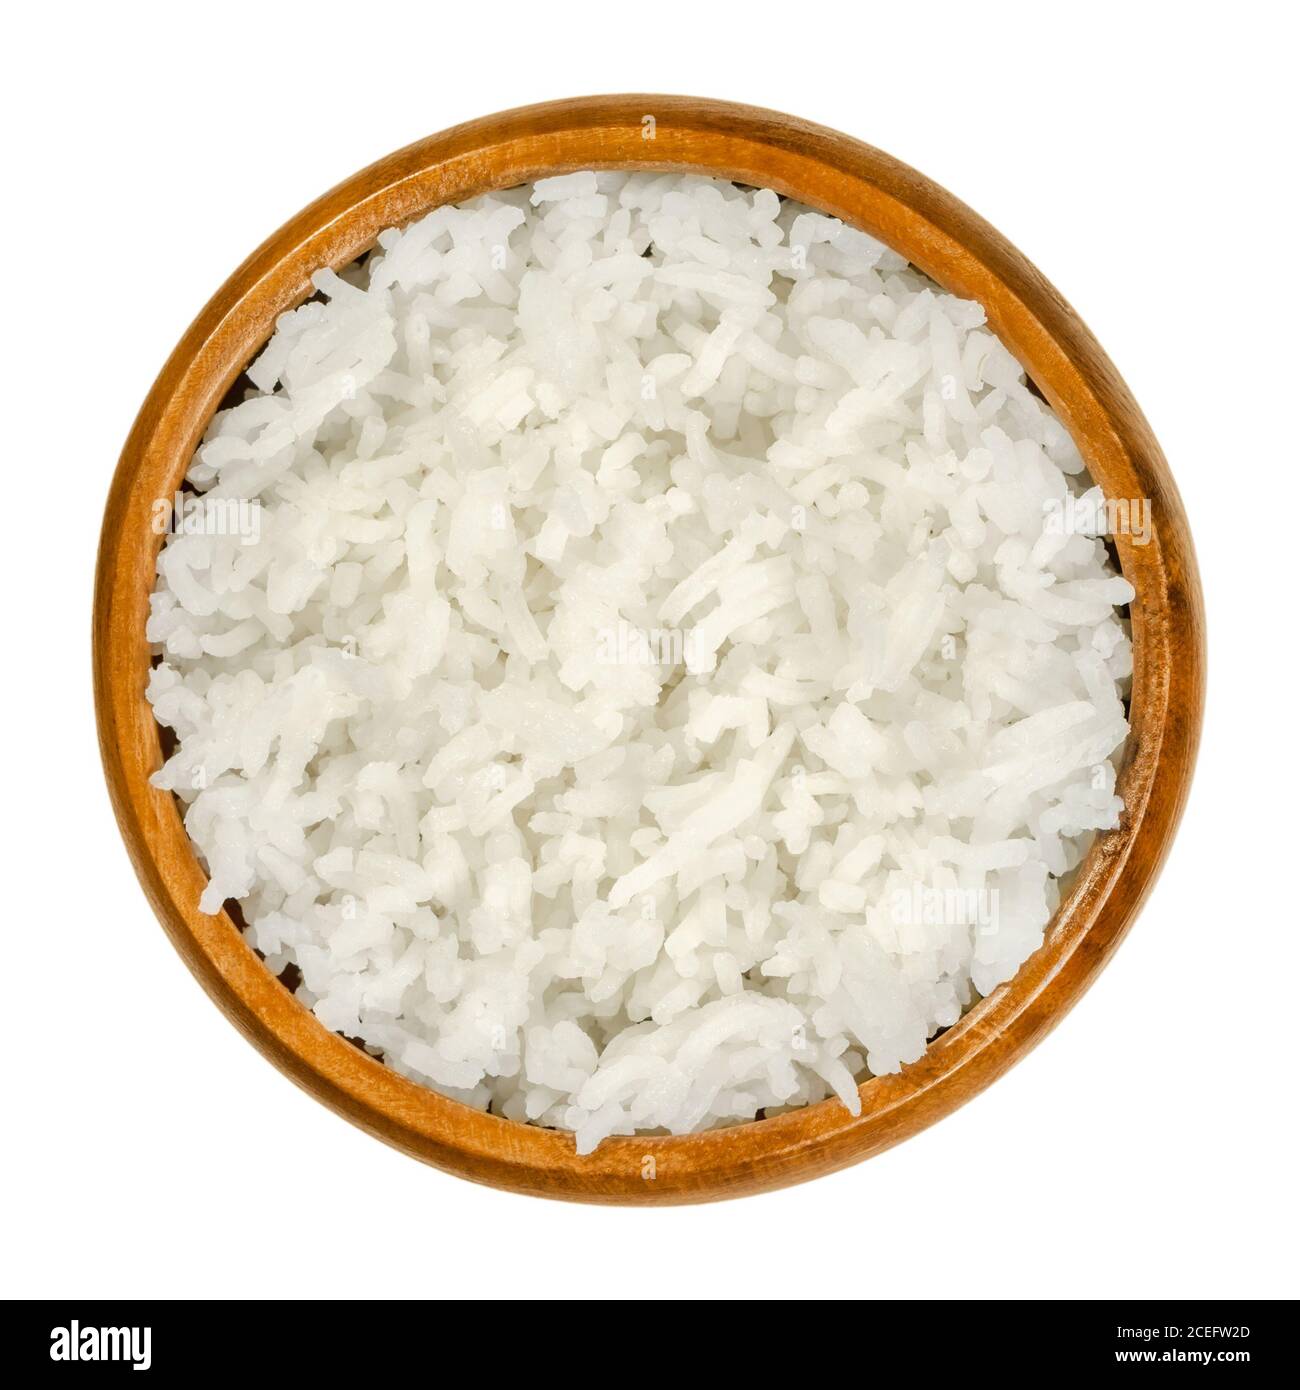 Arroz basmati blanco cocido en un cuenco de madera. Variedad de arroz con granos largos y esbeltos y olor y sabor aromáticos, del subcontinente indio. Foto de stock